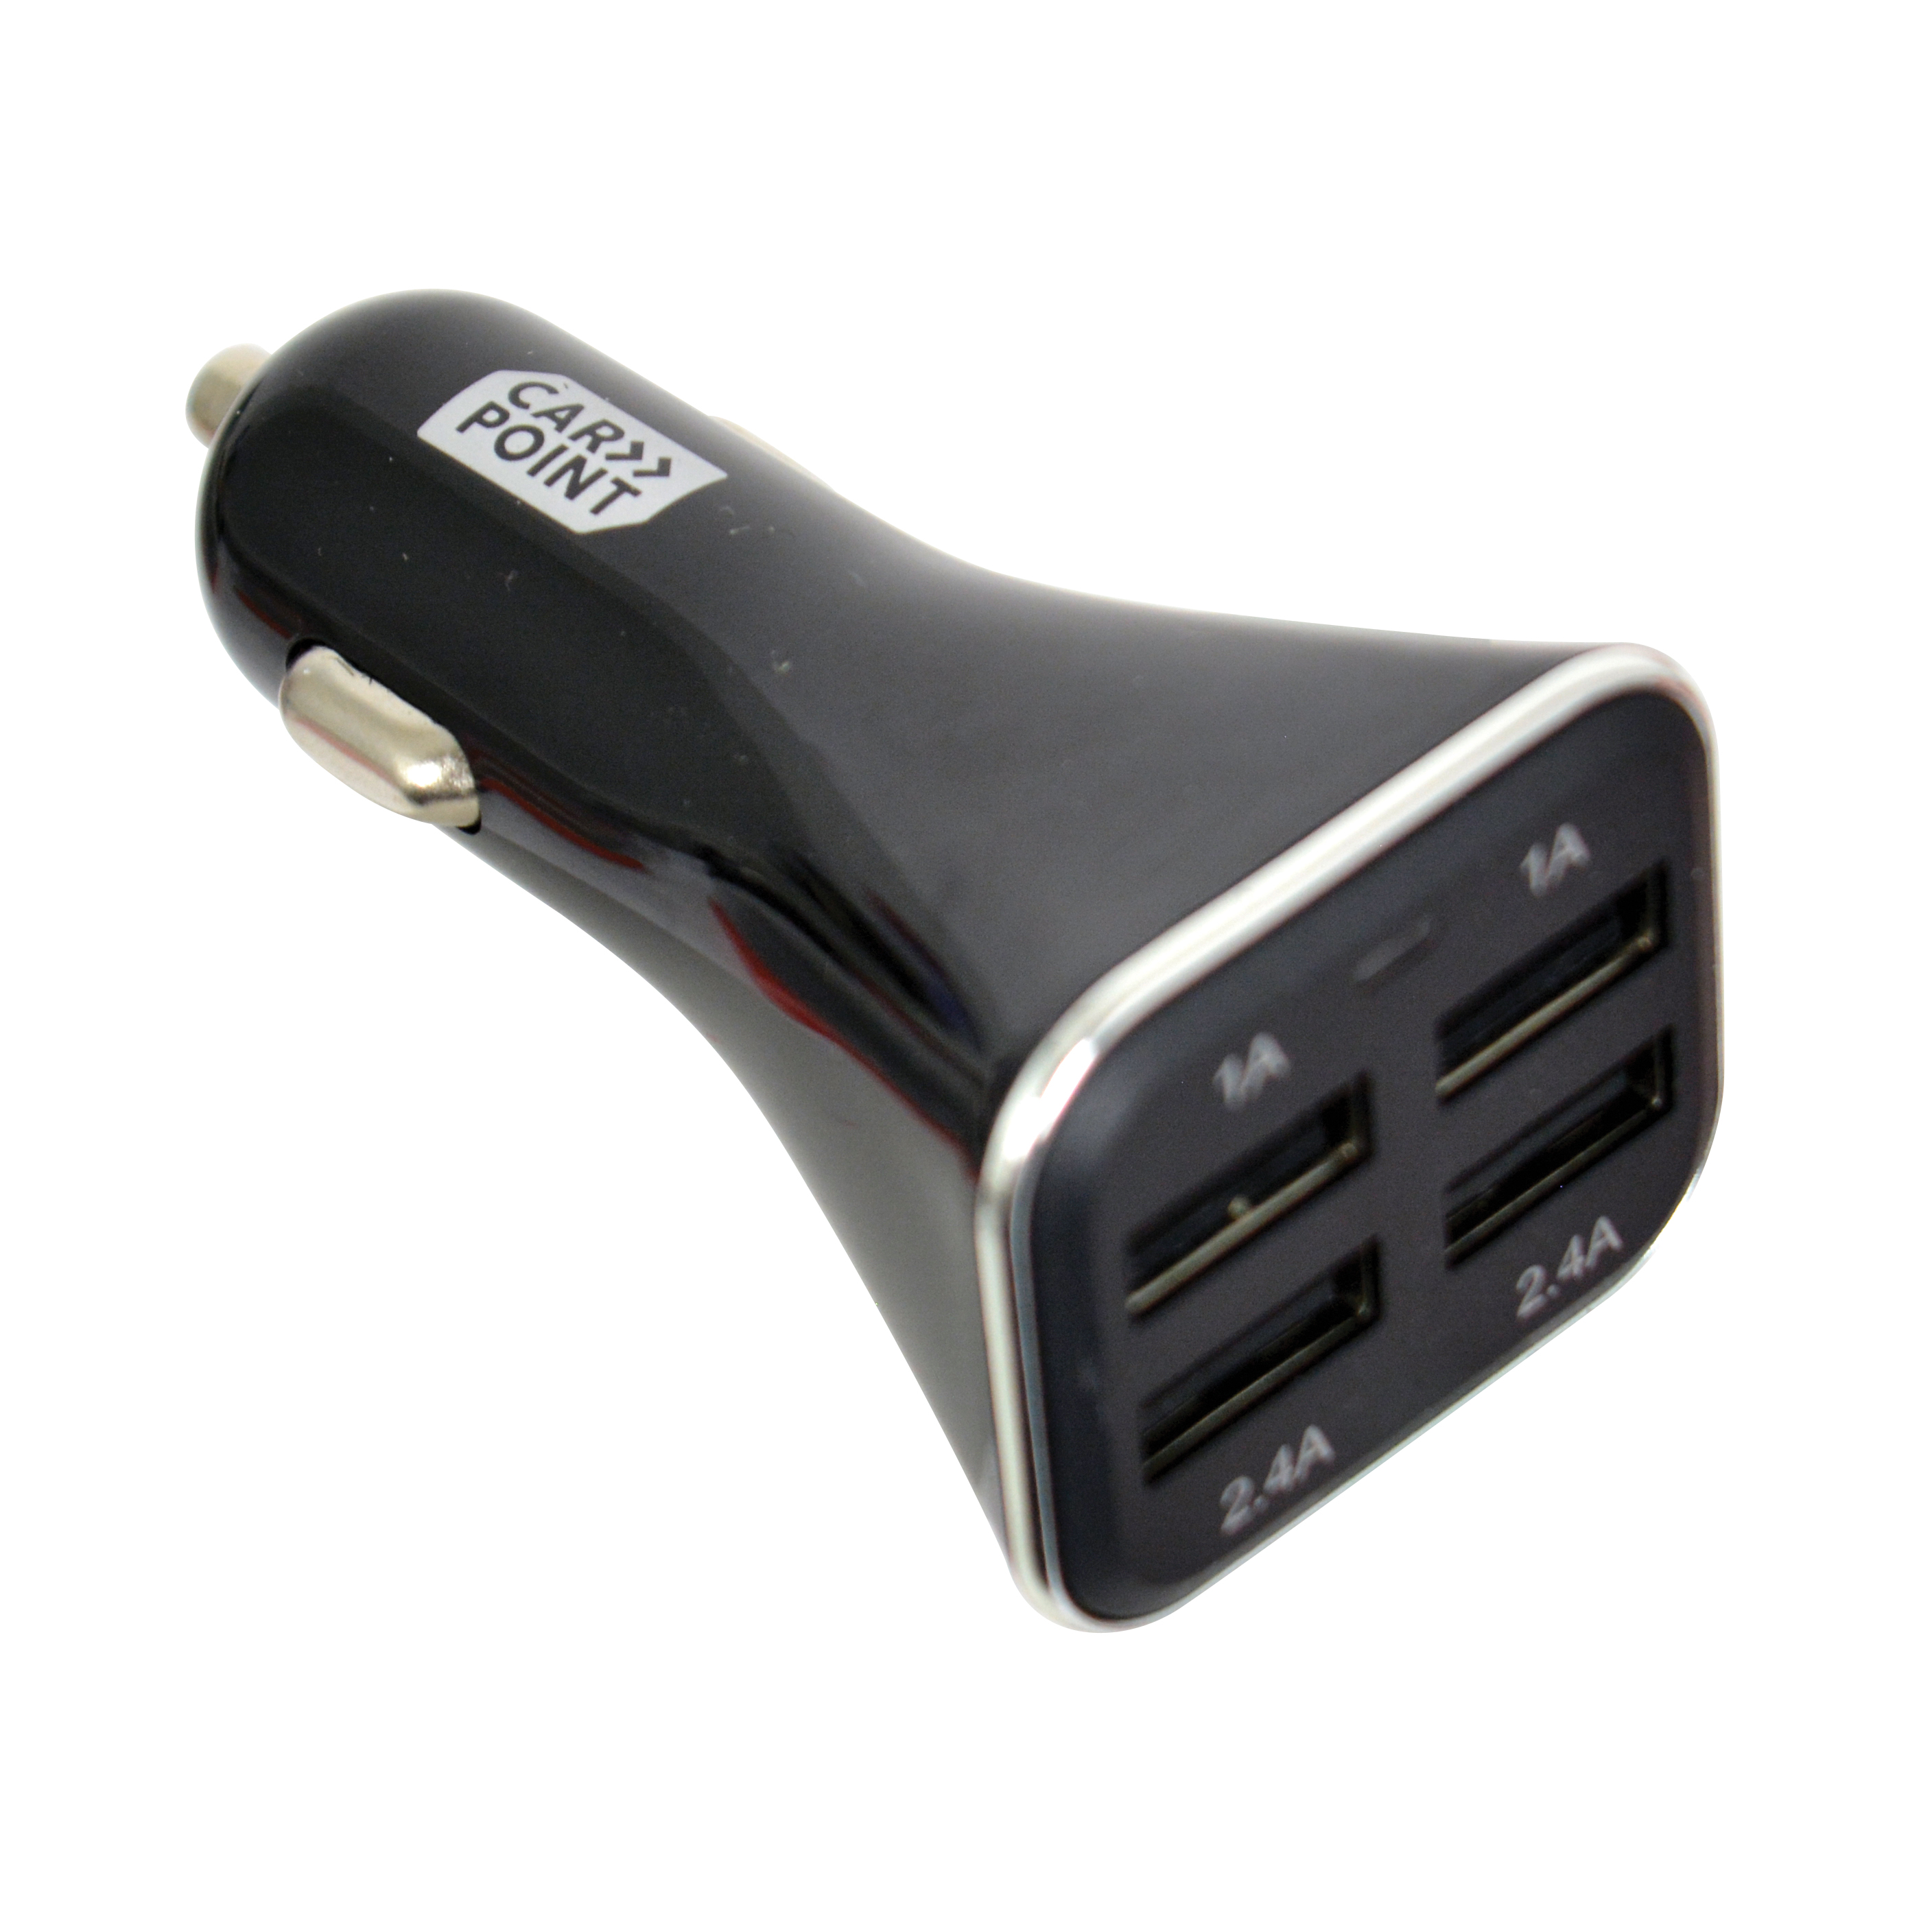 Acceder a la pieza CARGADOR USB CUADRUPLE 12-24VQUICK CHARGE MAX 6.8 A.